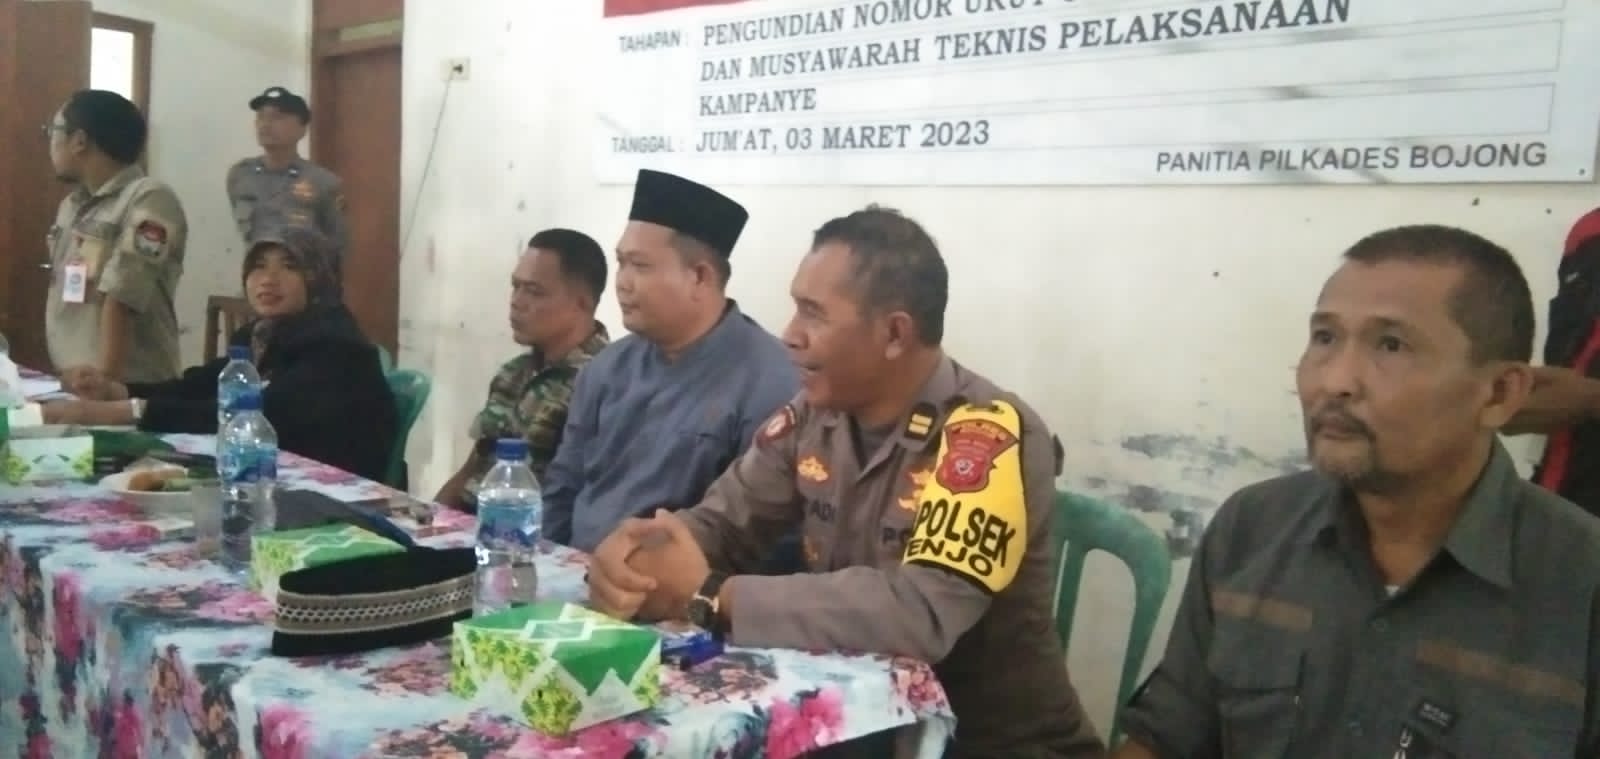 Penetapan No Urut Calon Kades Bojong Kecamatan Tenjo Terlaksana Sebaik Mungkin.